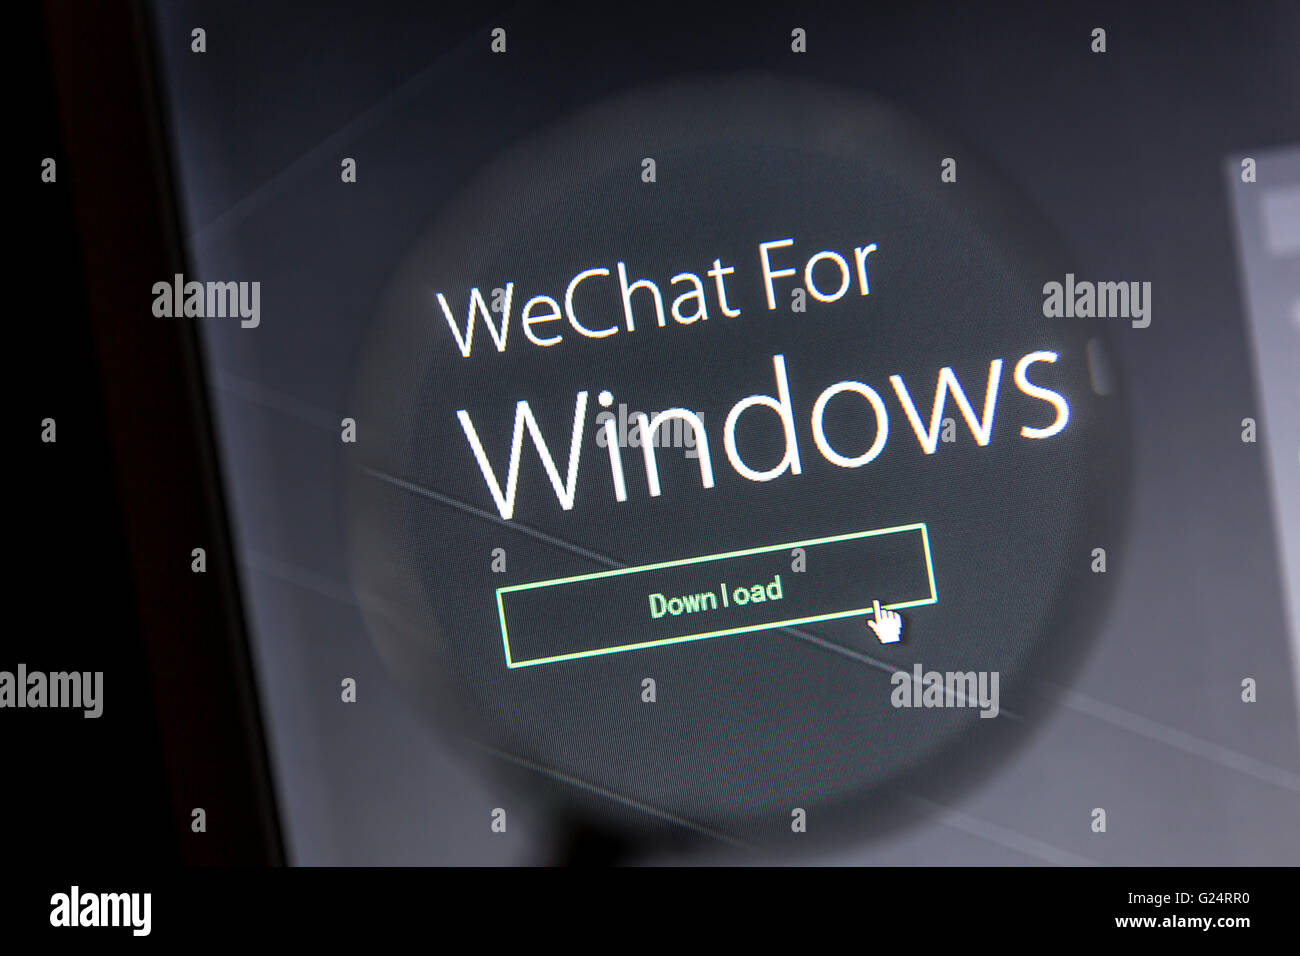 Le site web de WeChat sous une loupe. WeChat est un célèbre instant messaging application pour smartphones Banque D'Images